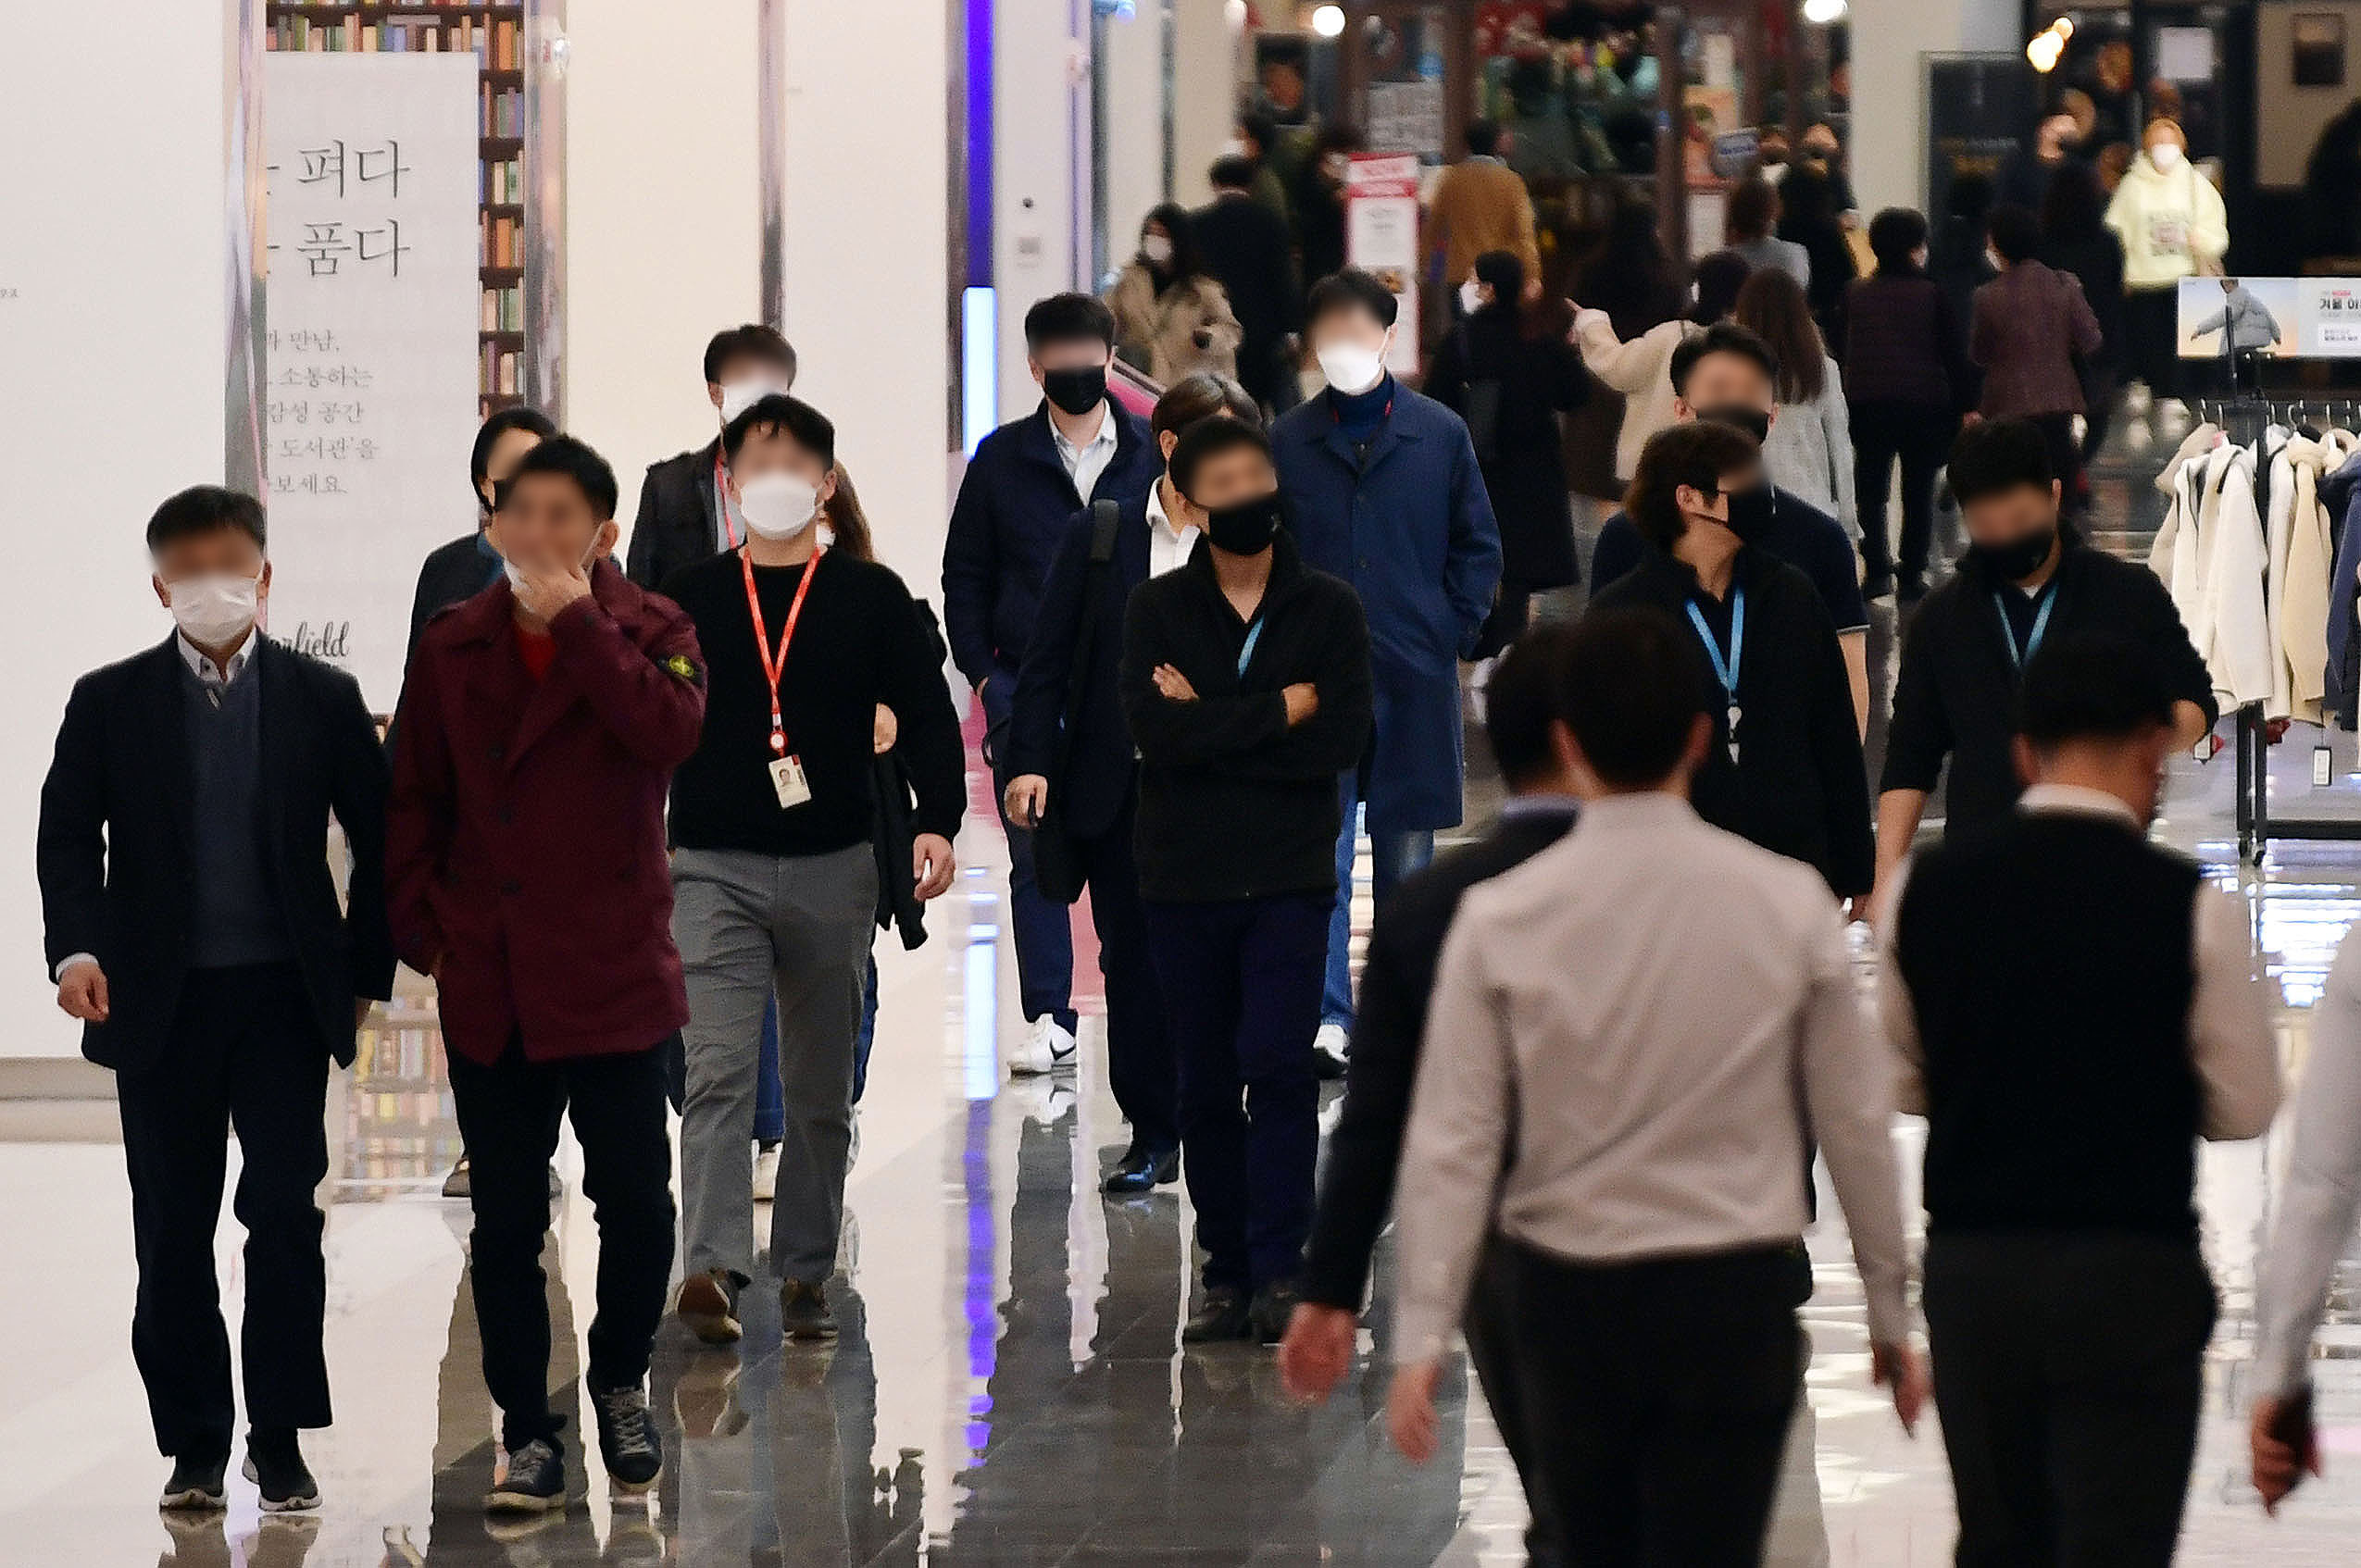 정부가 19일부터 2주간 수도권 사회적 거리두기를 1.5단계로 격상한다고 발표한 17일 서울 시내 한 대형 쇼핑몰에서 시민들이 마스크를 쓰고 걷고 있다. 2020 11. 17 박윤슬 기자 seul@seoul.co.kr